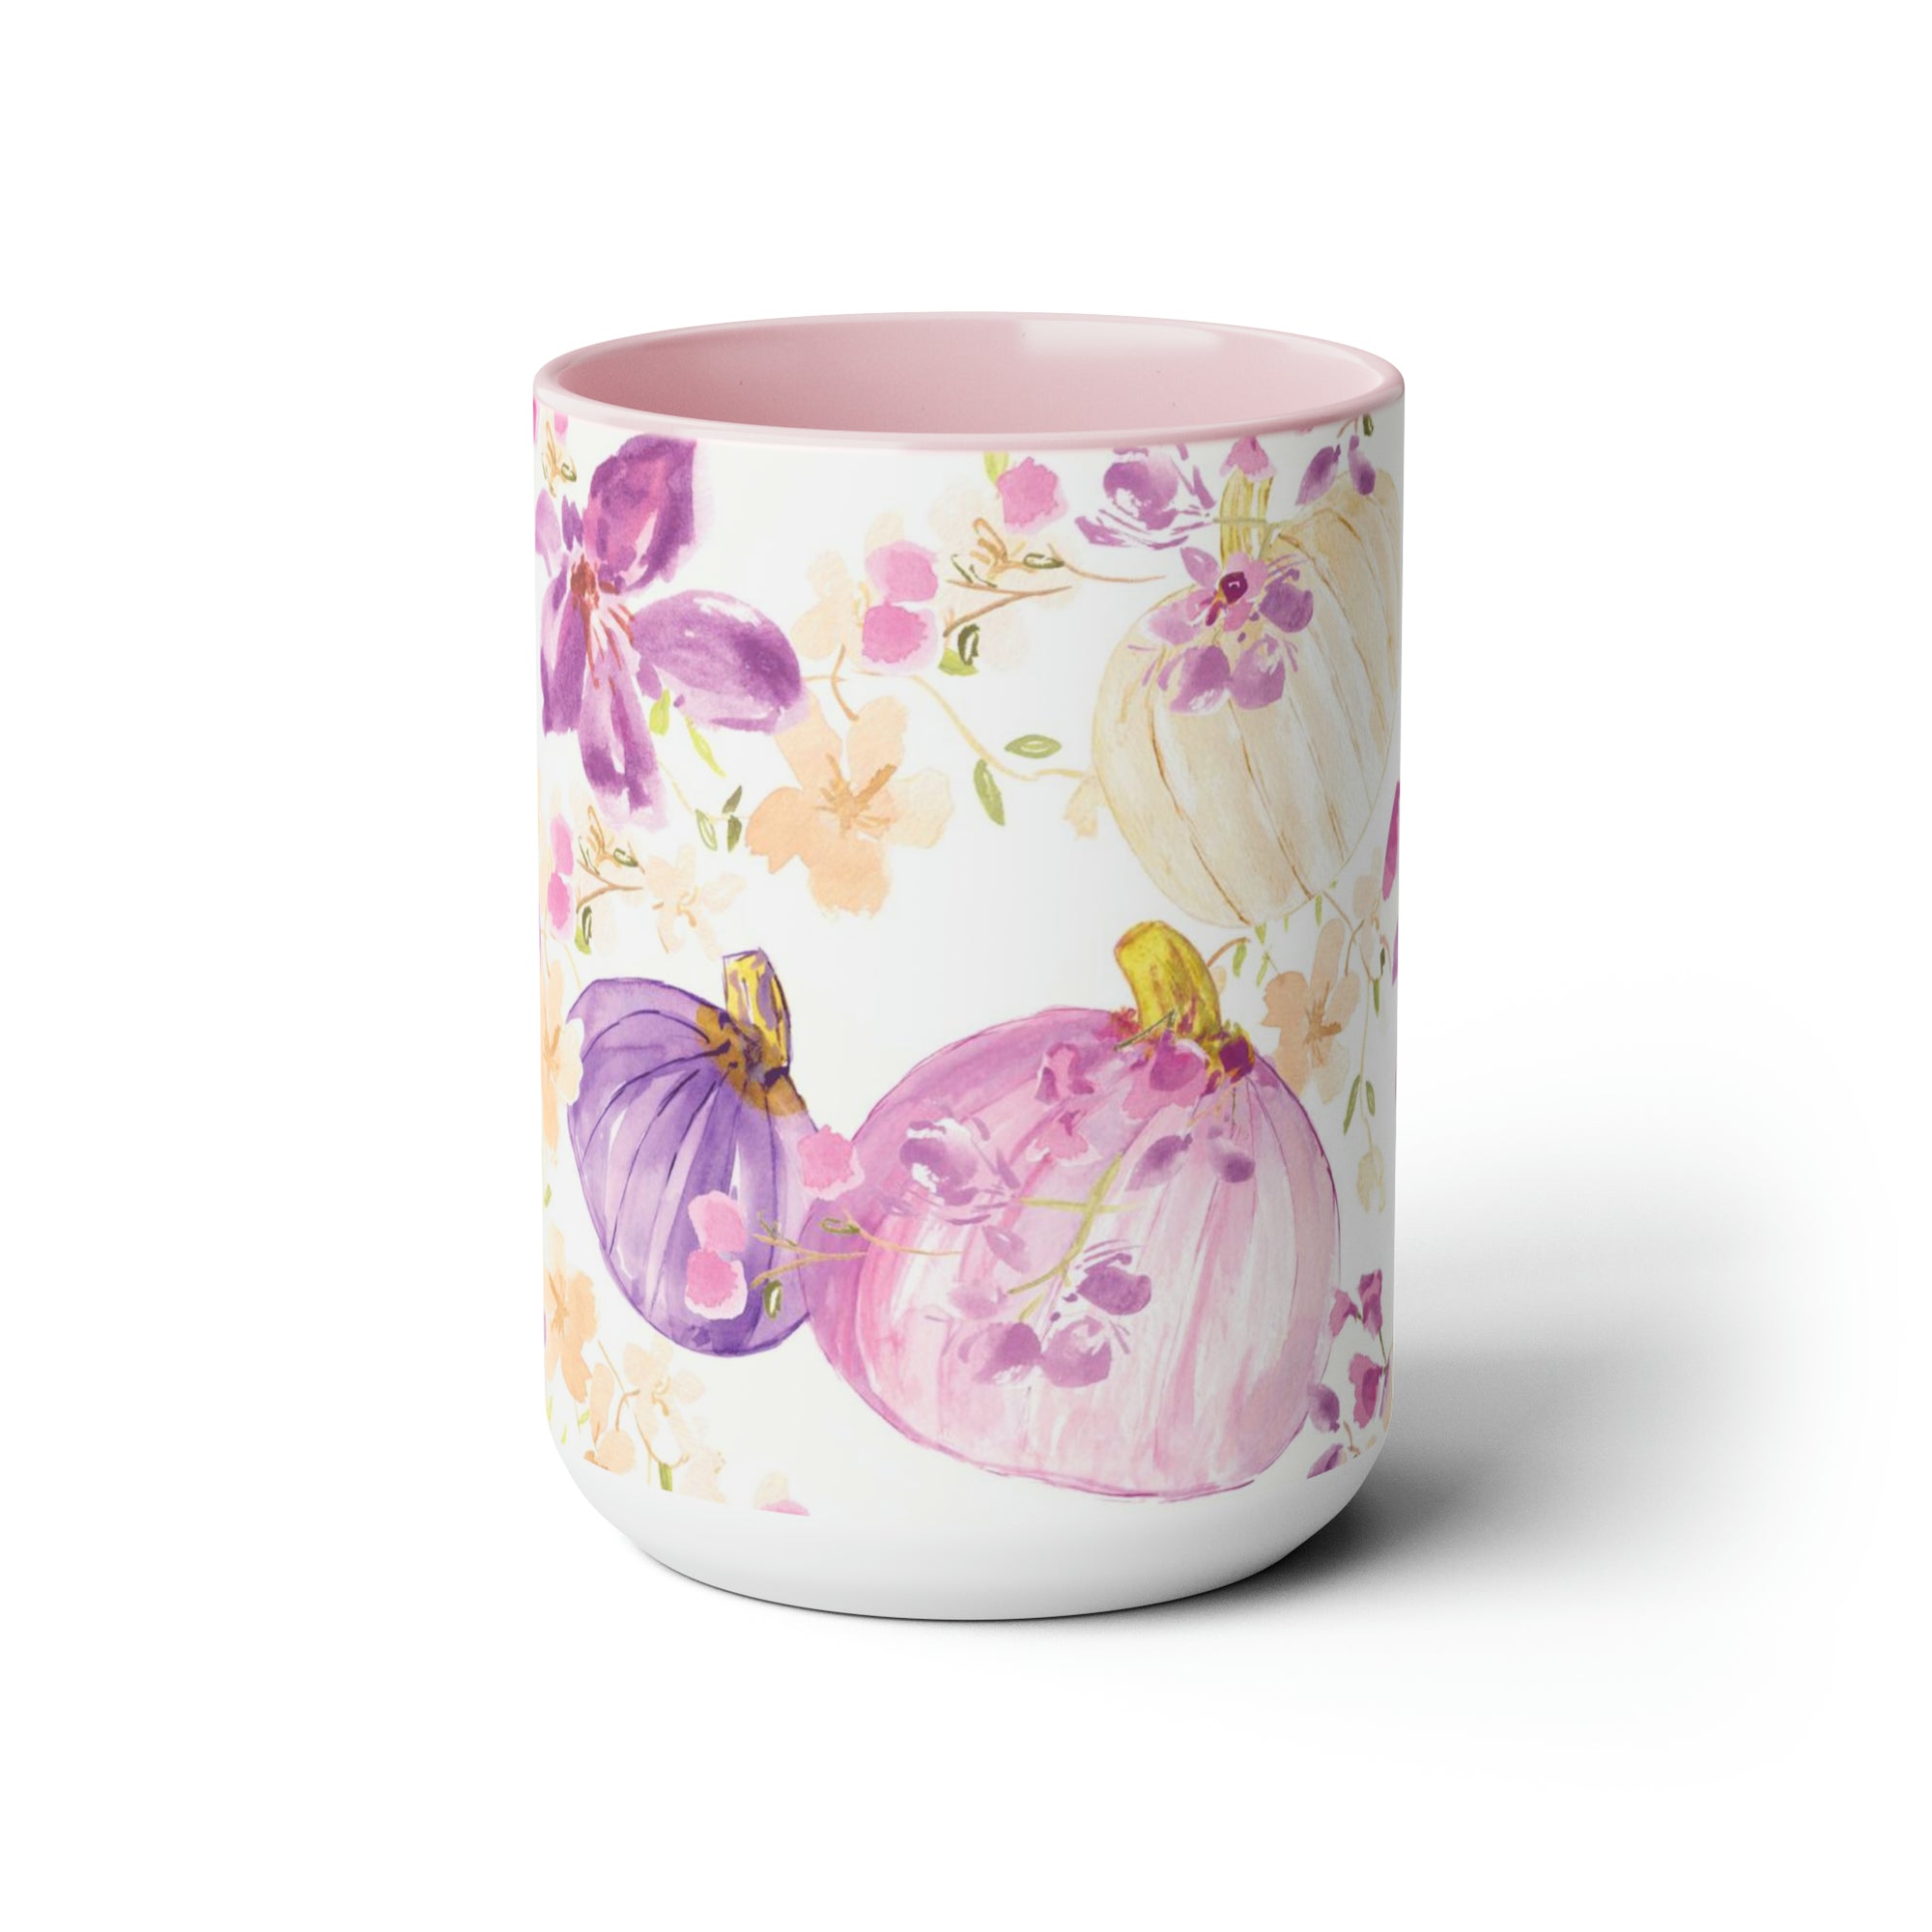 Special Coffee Mug, 15oz | Halloween Mug | Thanksgiving Purple Mug